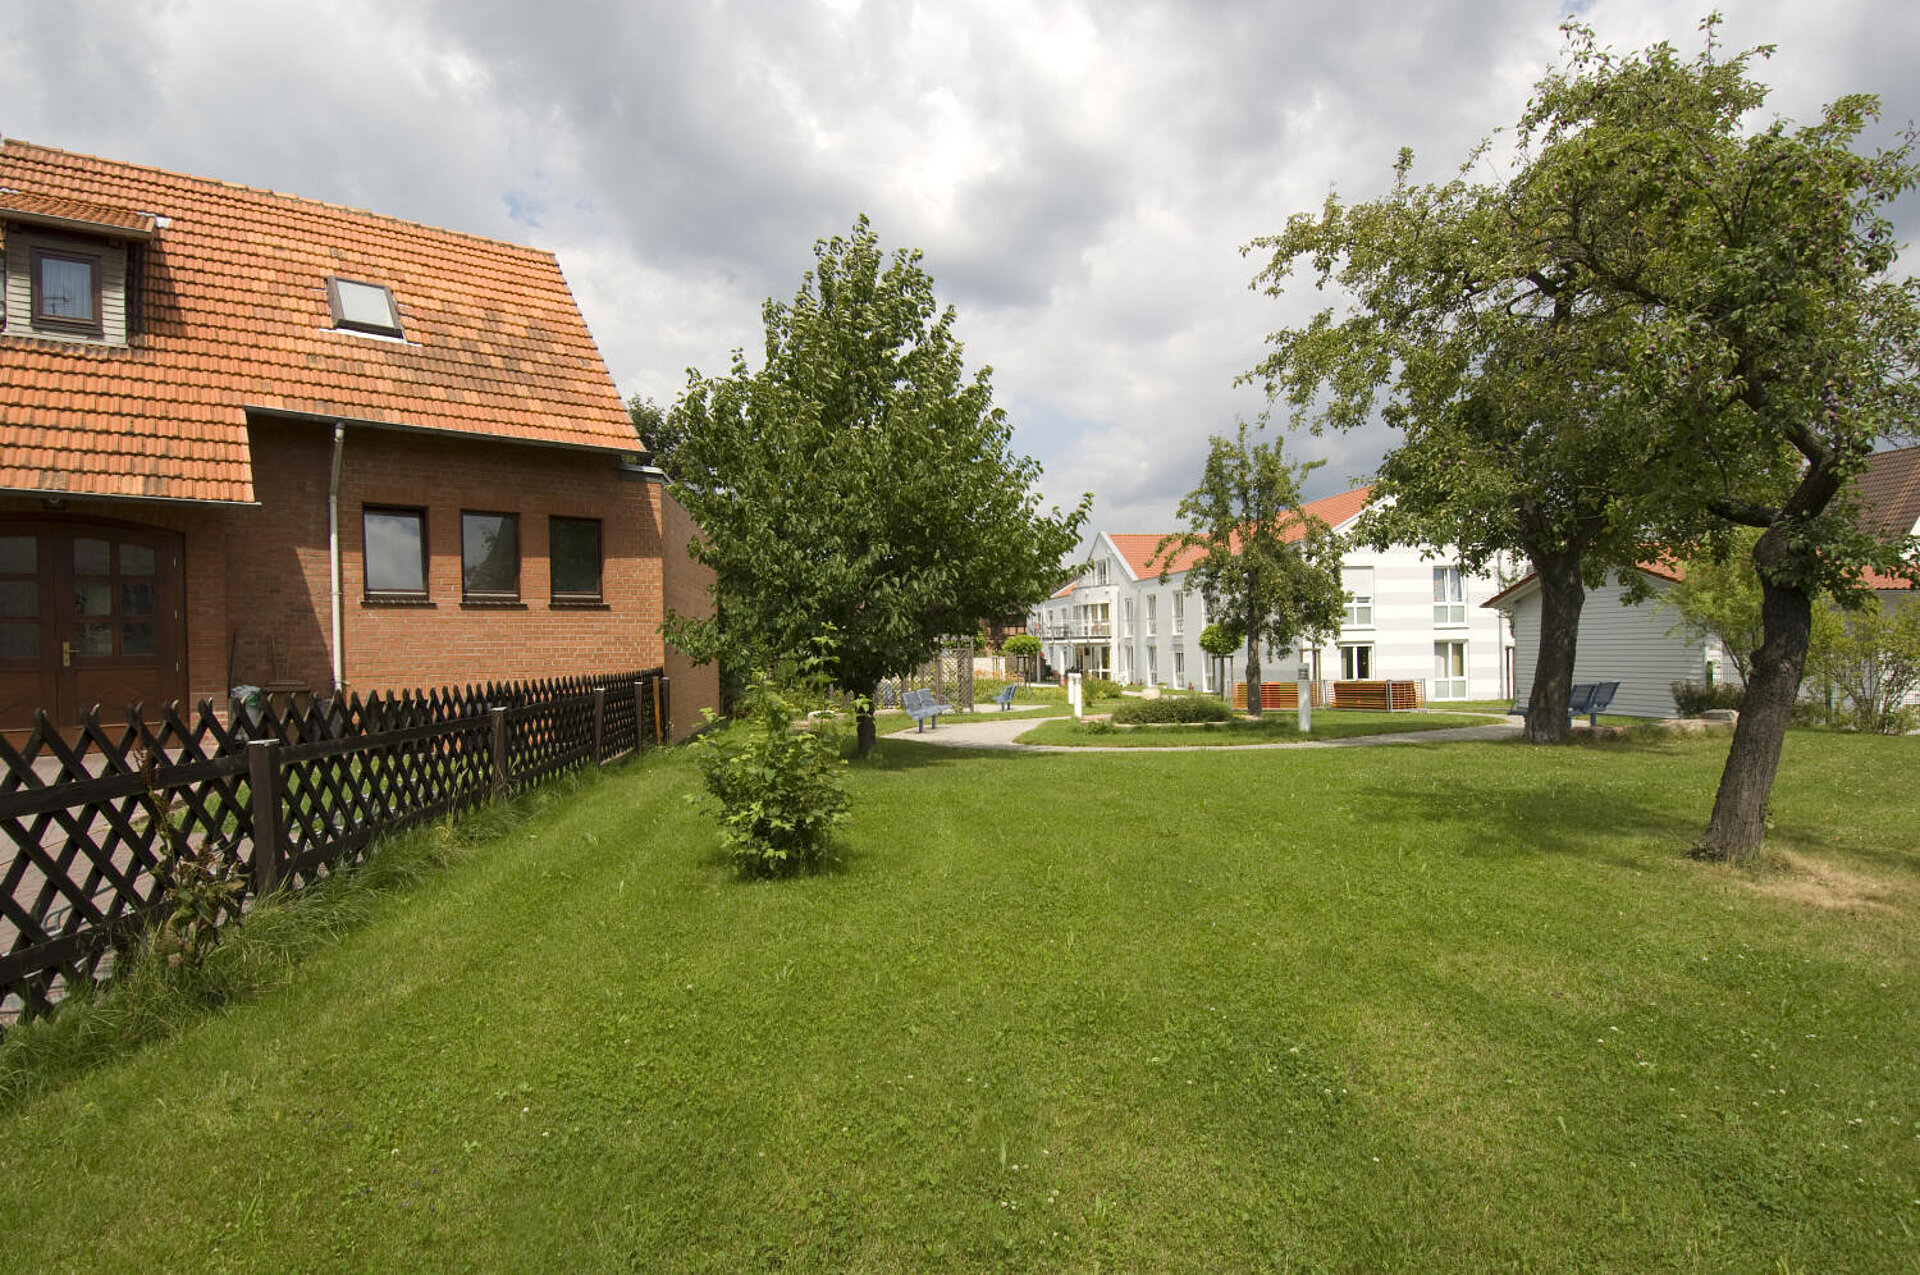 Vom Rande einer großen Rasenfläche mit mehreren großen Bäumen schaut man auf eine weiße Häusergruppe, vor der sich ein Platz miz Bäumen und Sitzubänken befindet. Links ein Holzzaun, der ein Grundstück mit rotem einstöckigem Haus umschließt.